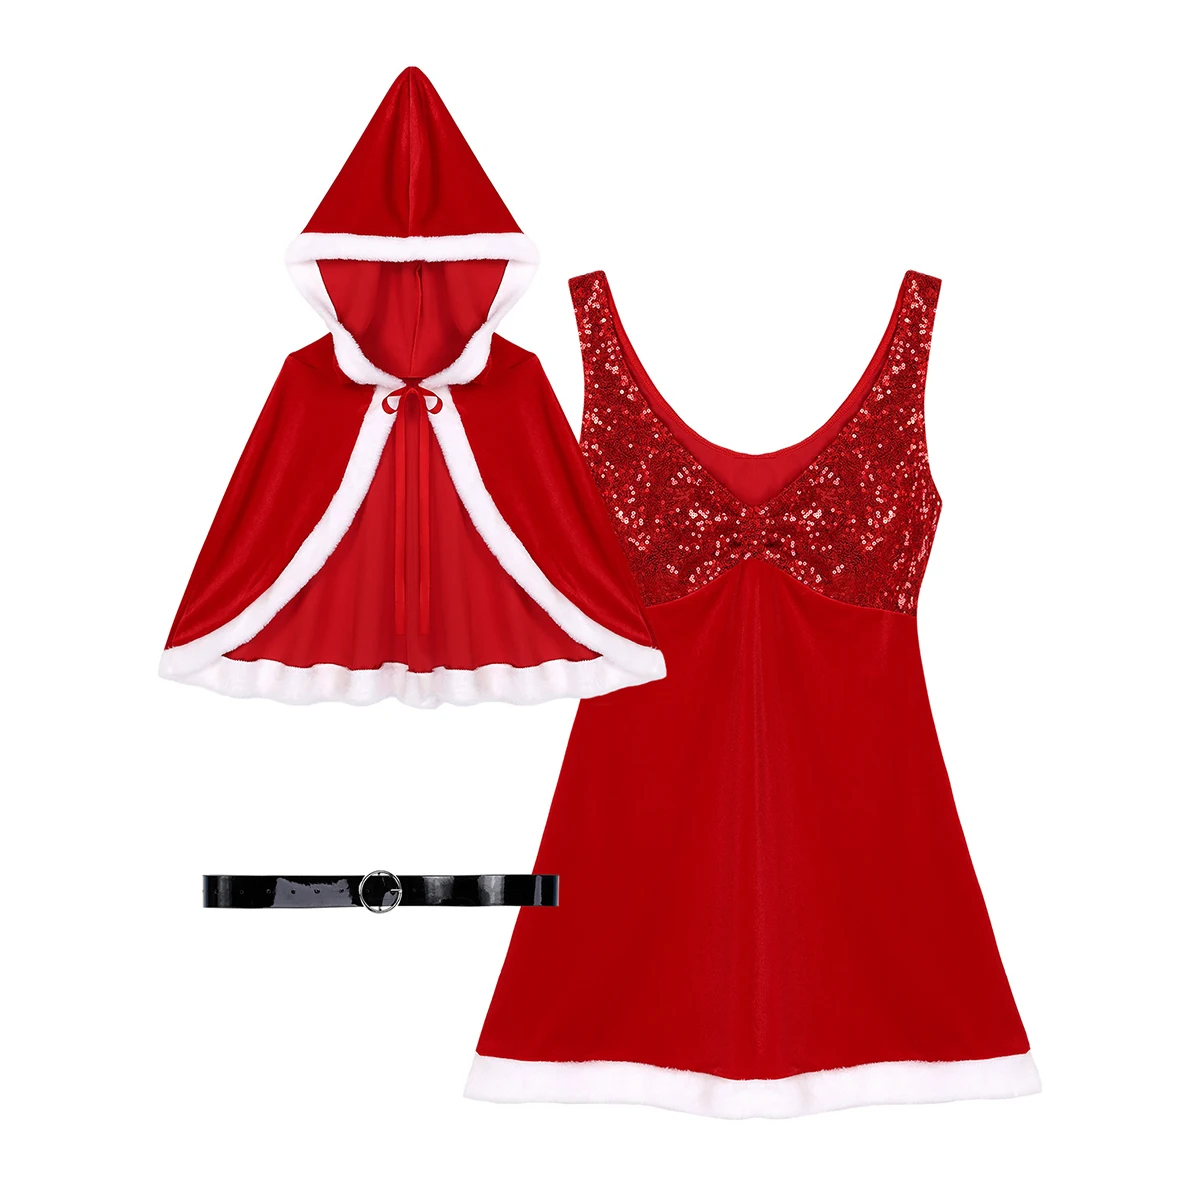 DPOIS, Женская рождественская одежда, маскарадный костюм Санта-Клауса На Хэллоуин для взрослых, блестящее платье, накидка и пояс, новогодний костюм